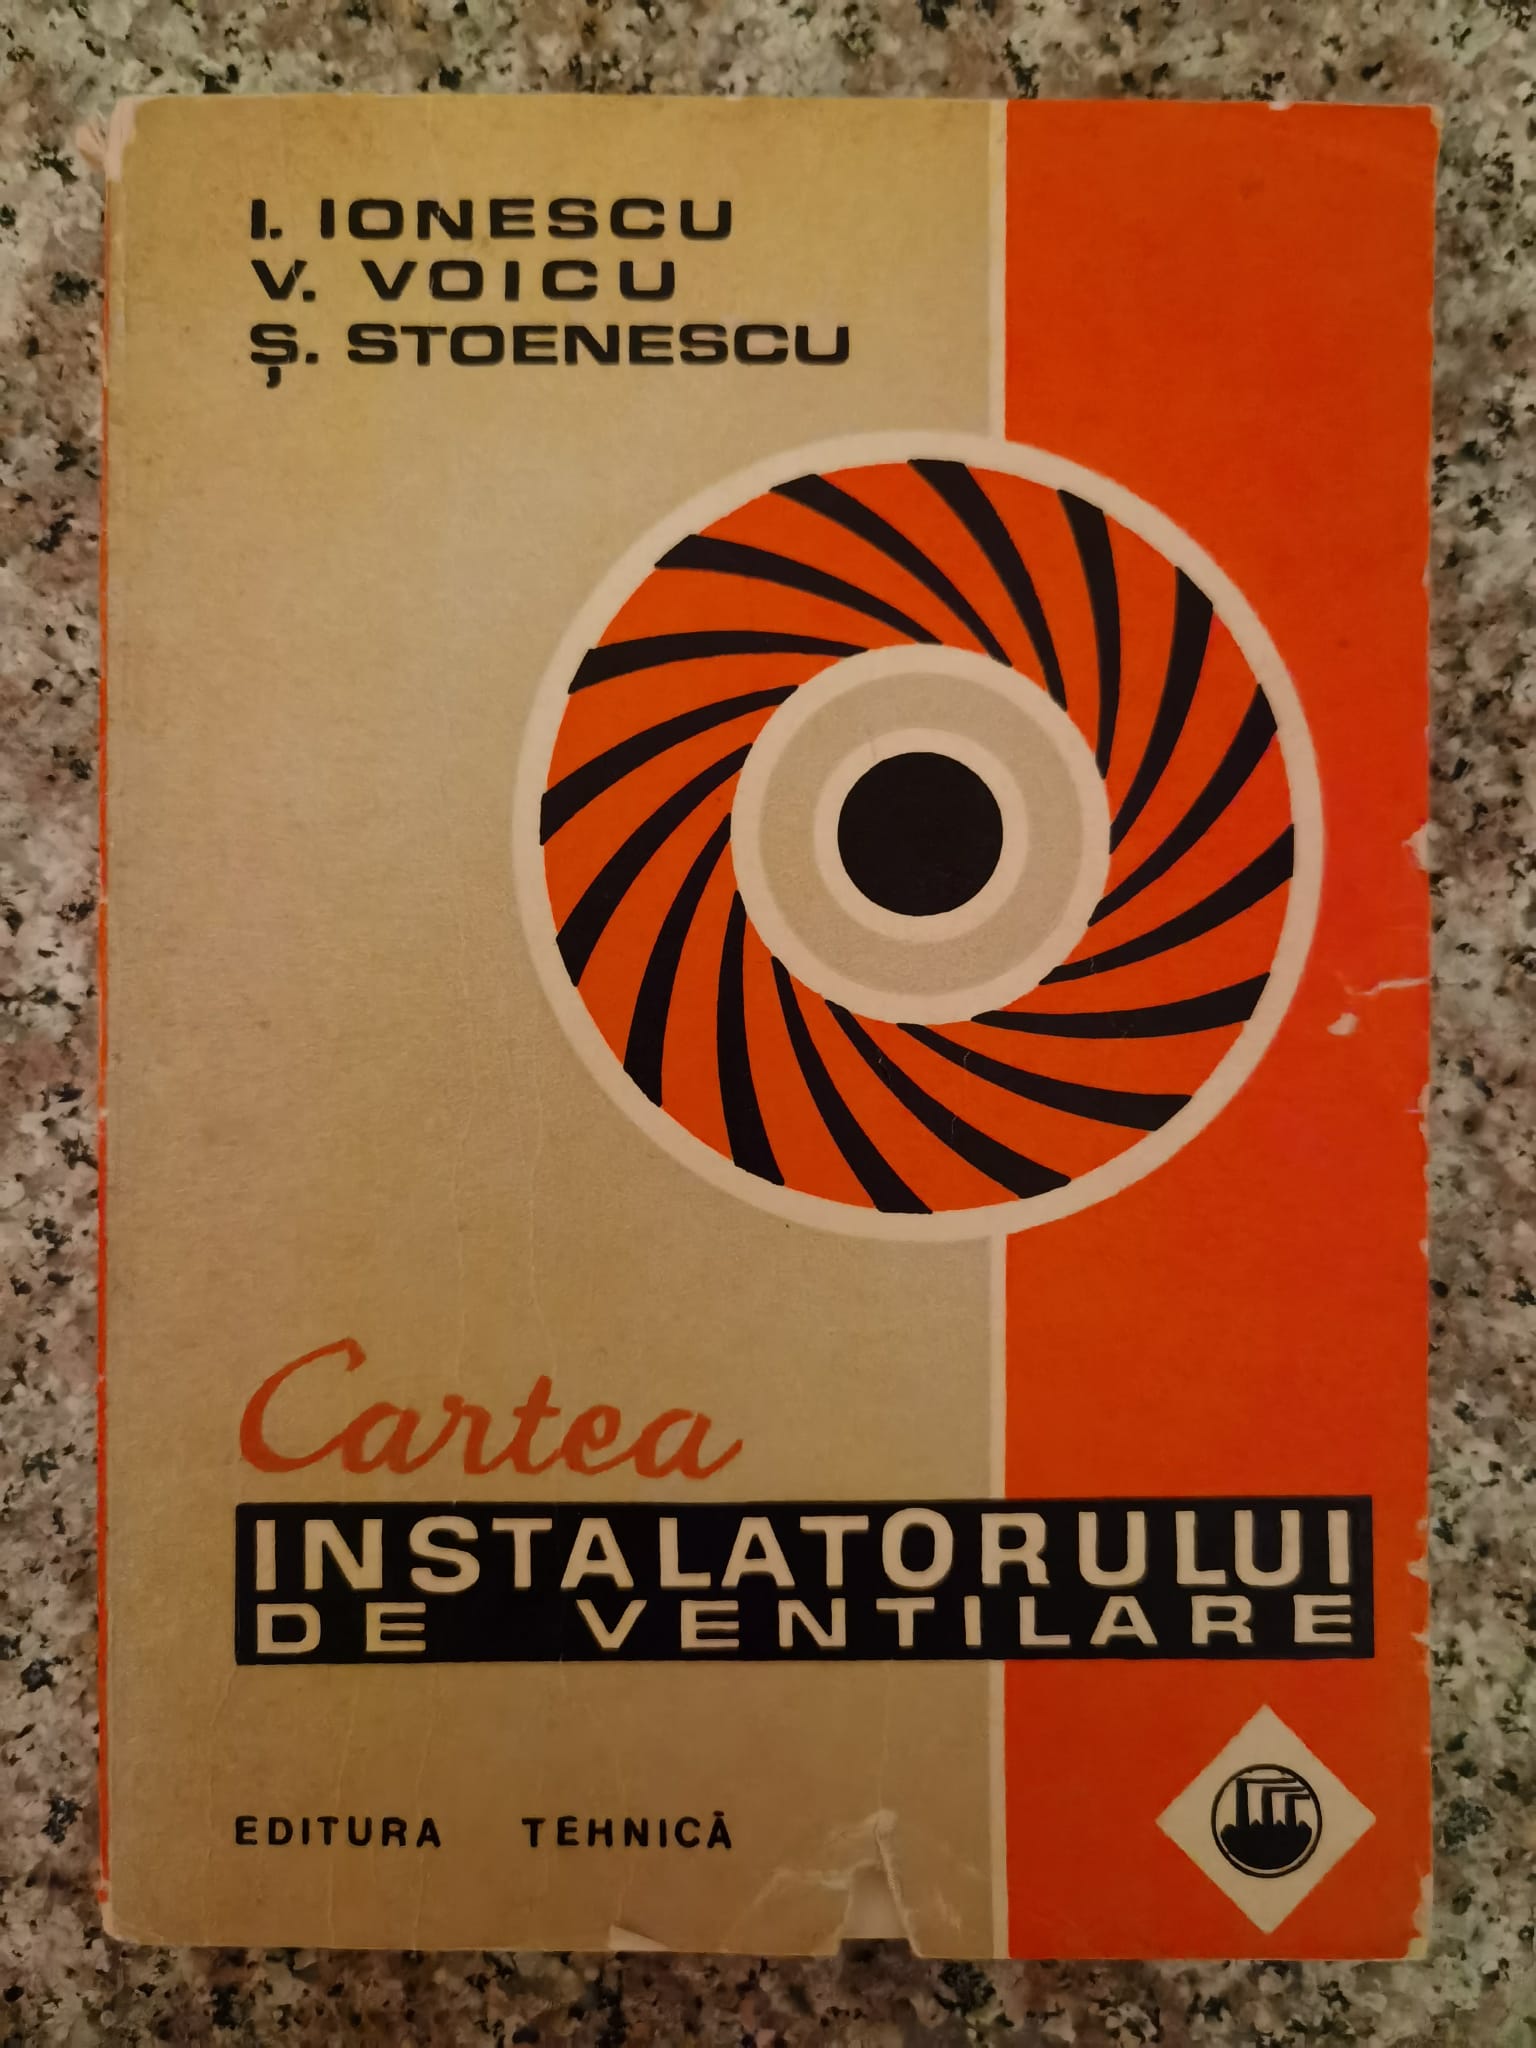 cartea instalatorului de ventilare                                                                   i.ionescu v.voicu s.stoenescu                                                                       